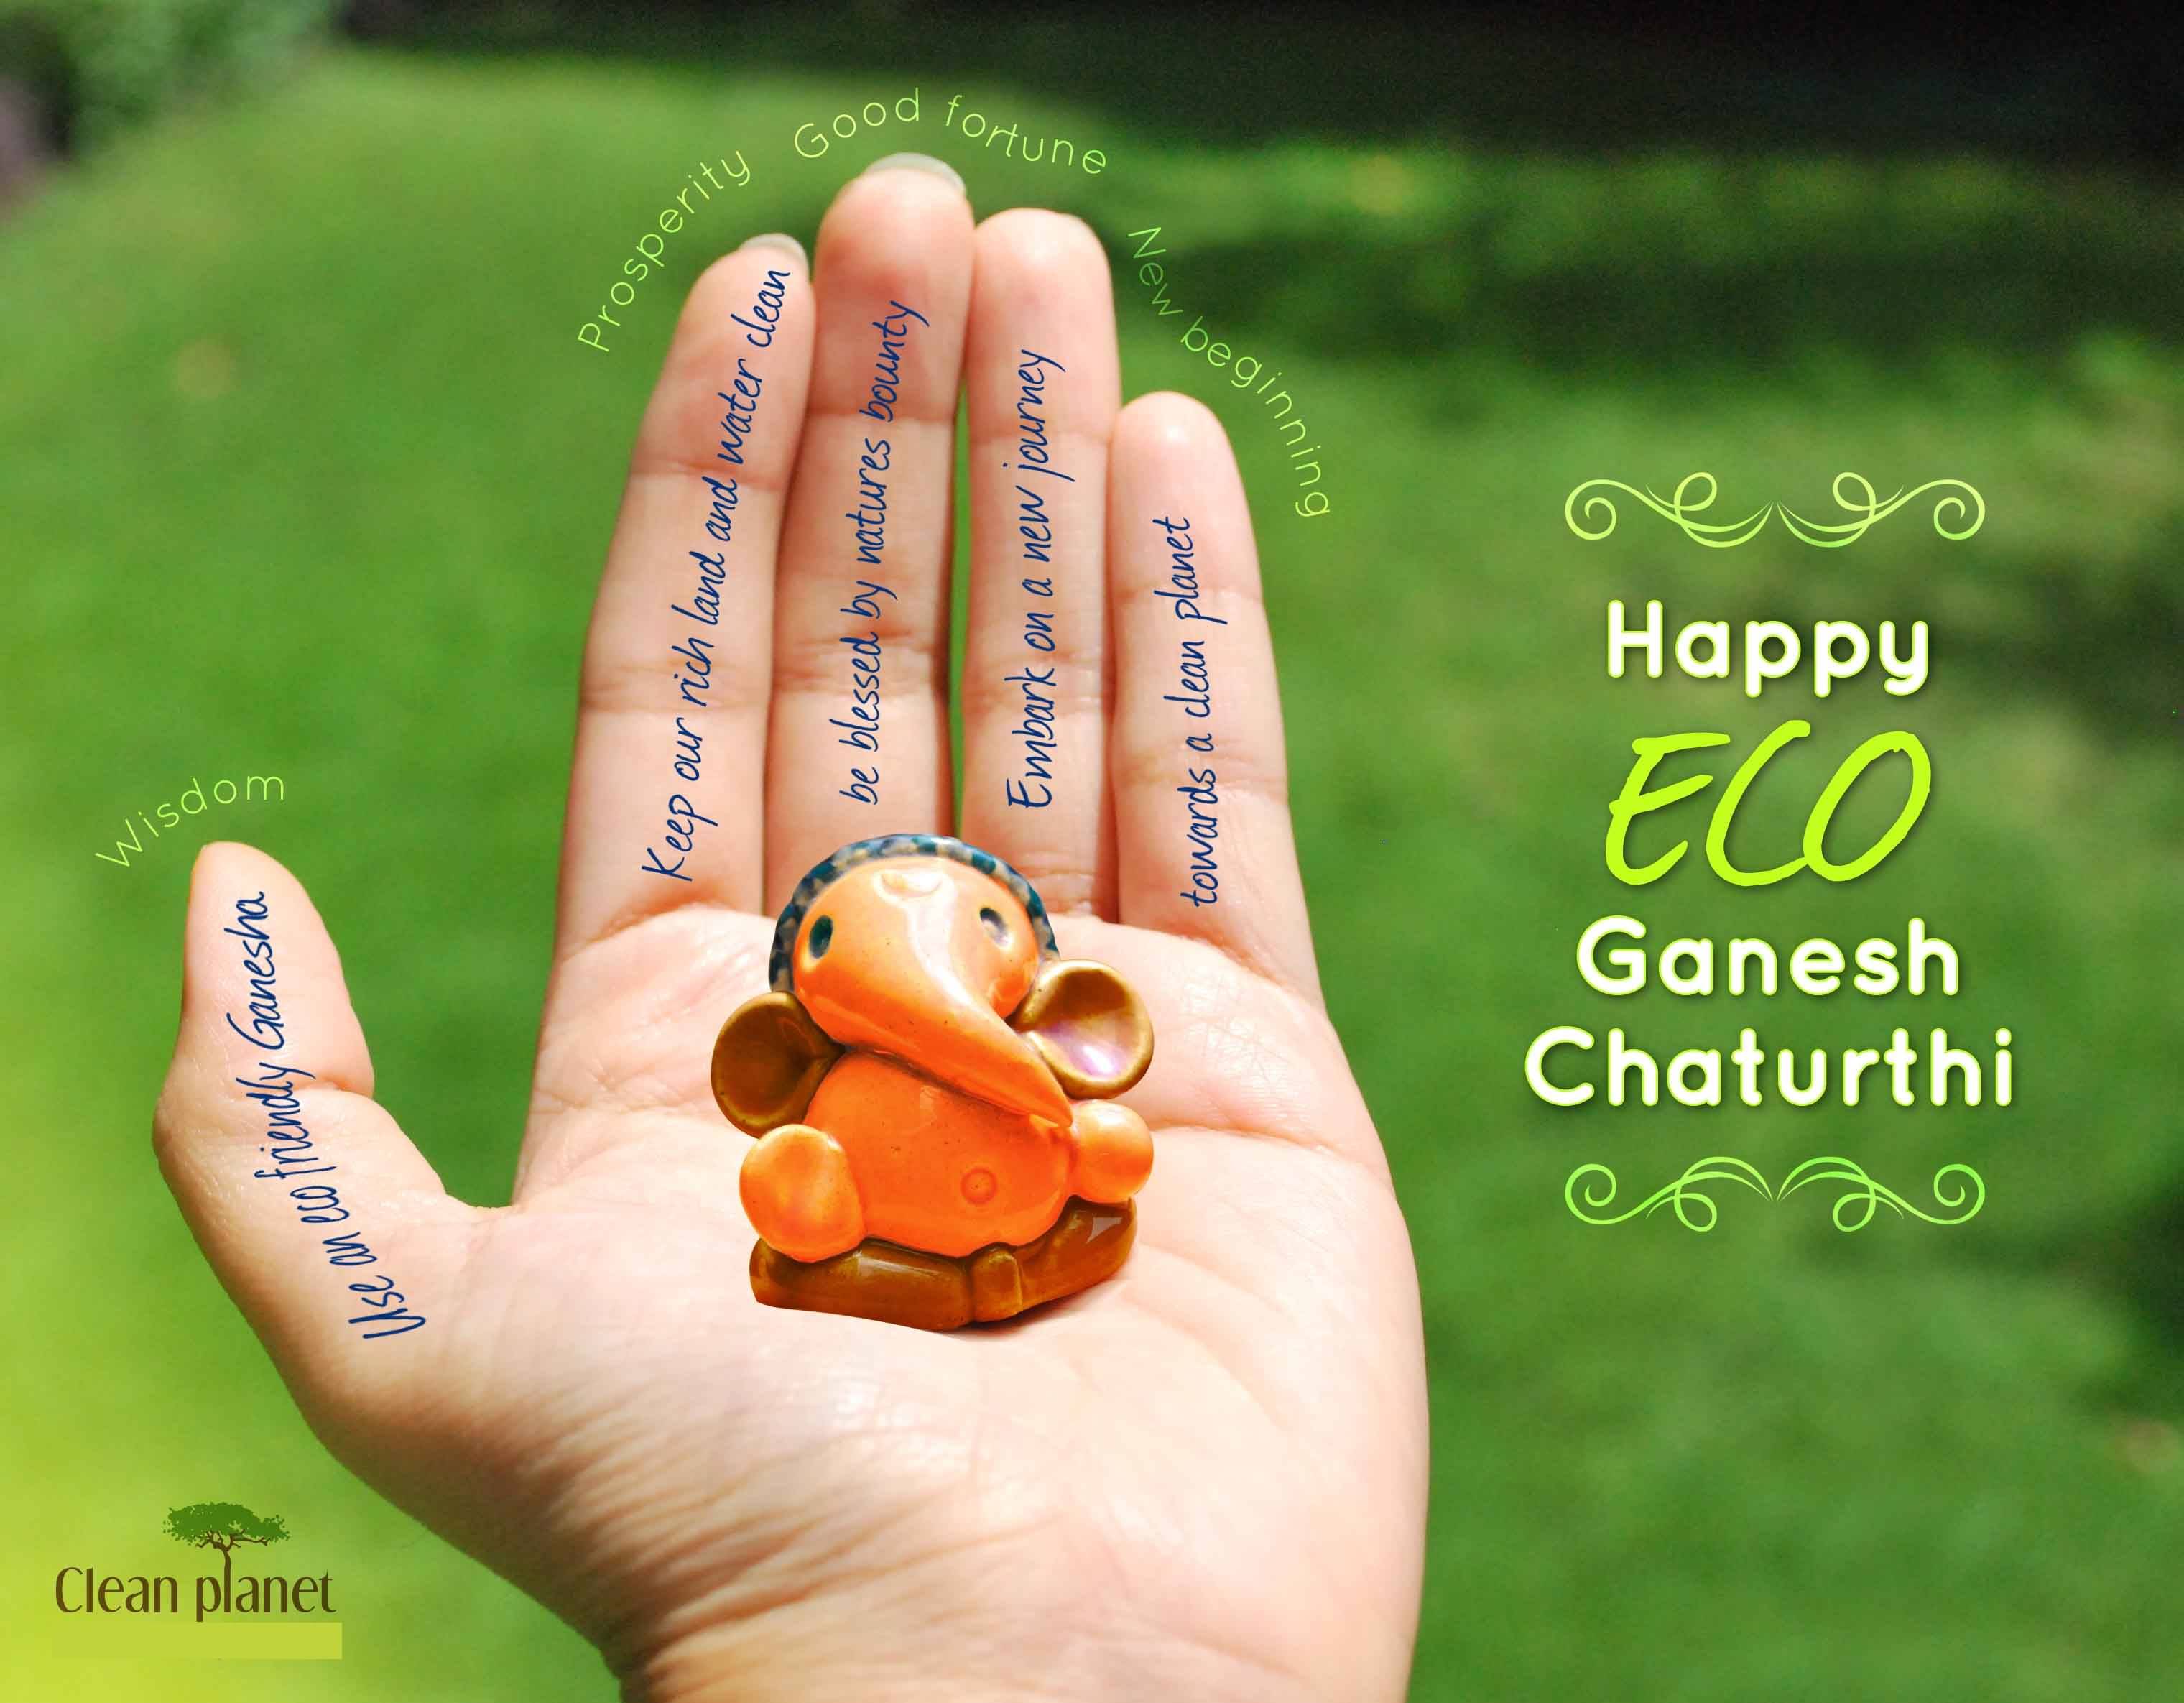 Happy Eco Ganesh Chaturthi 2017